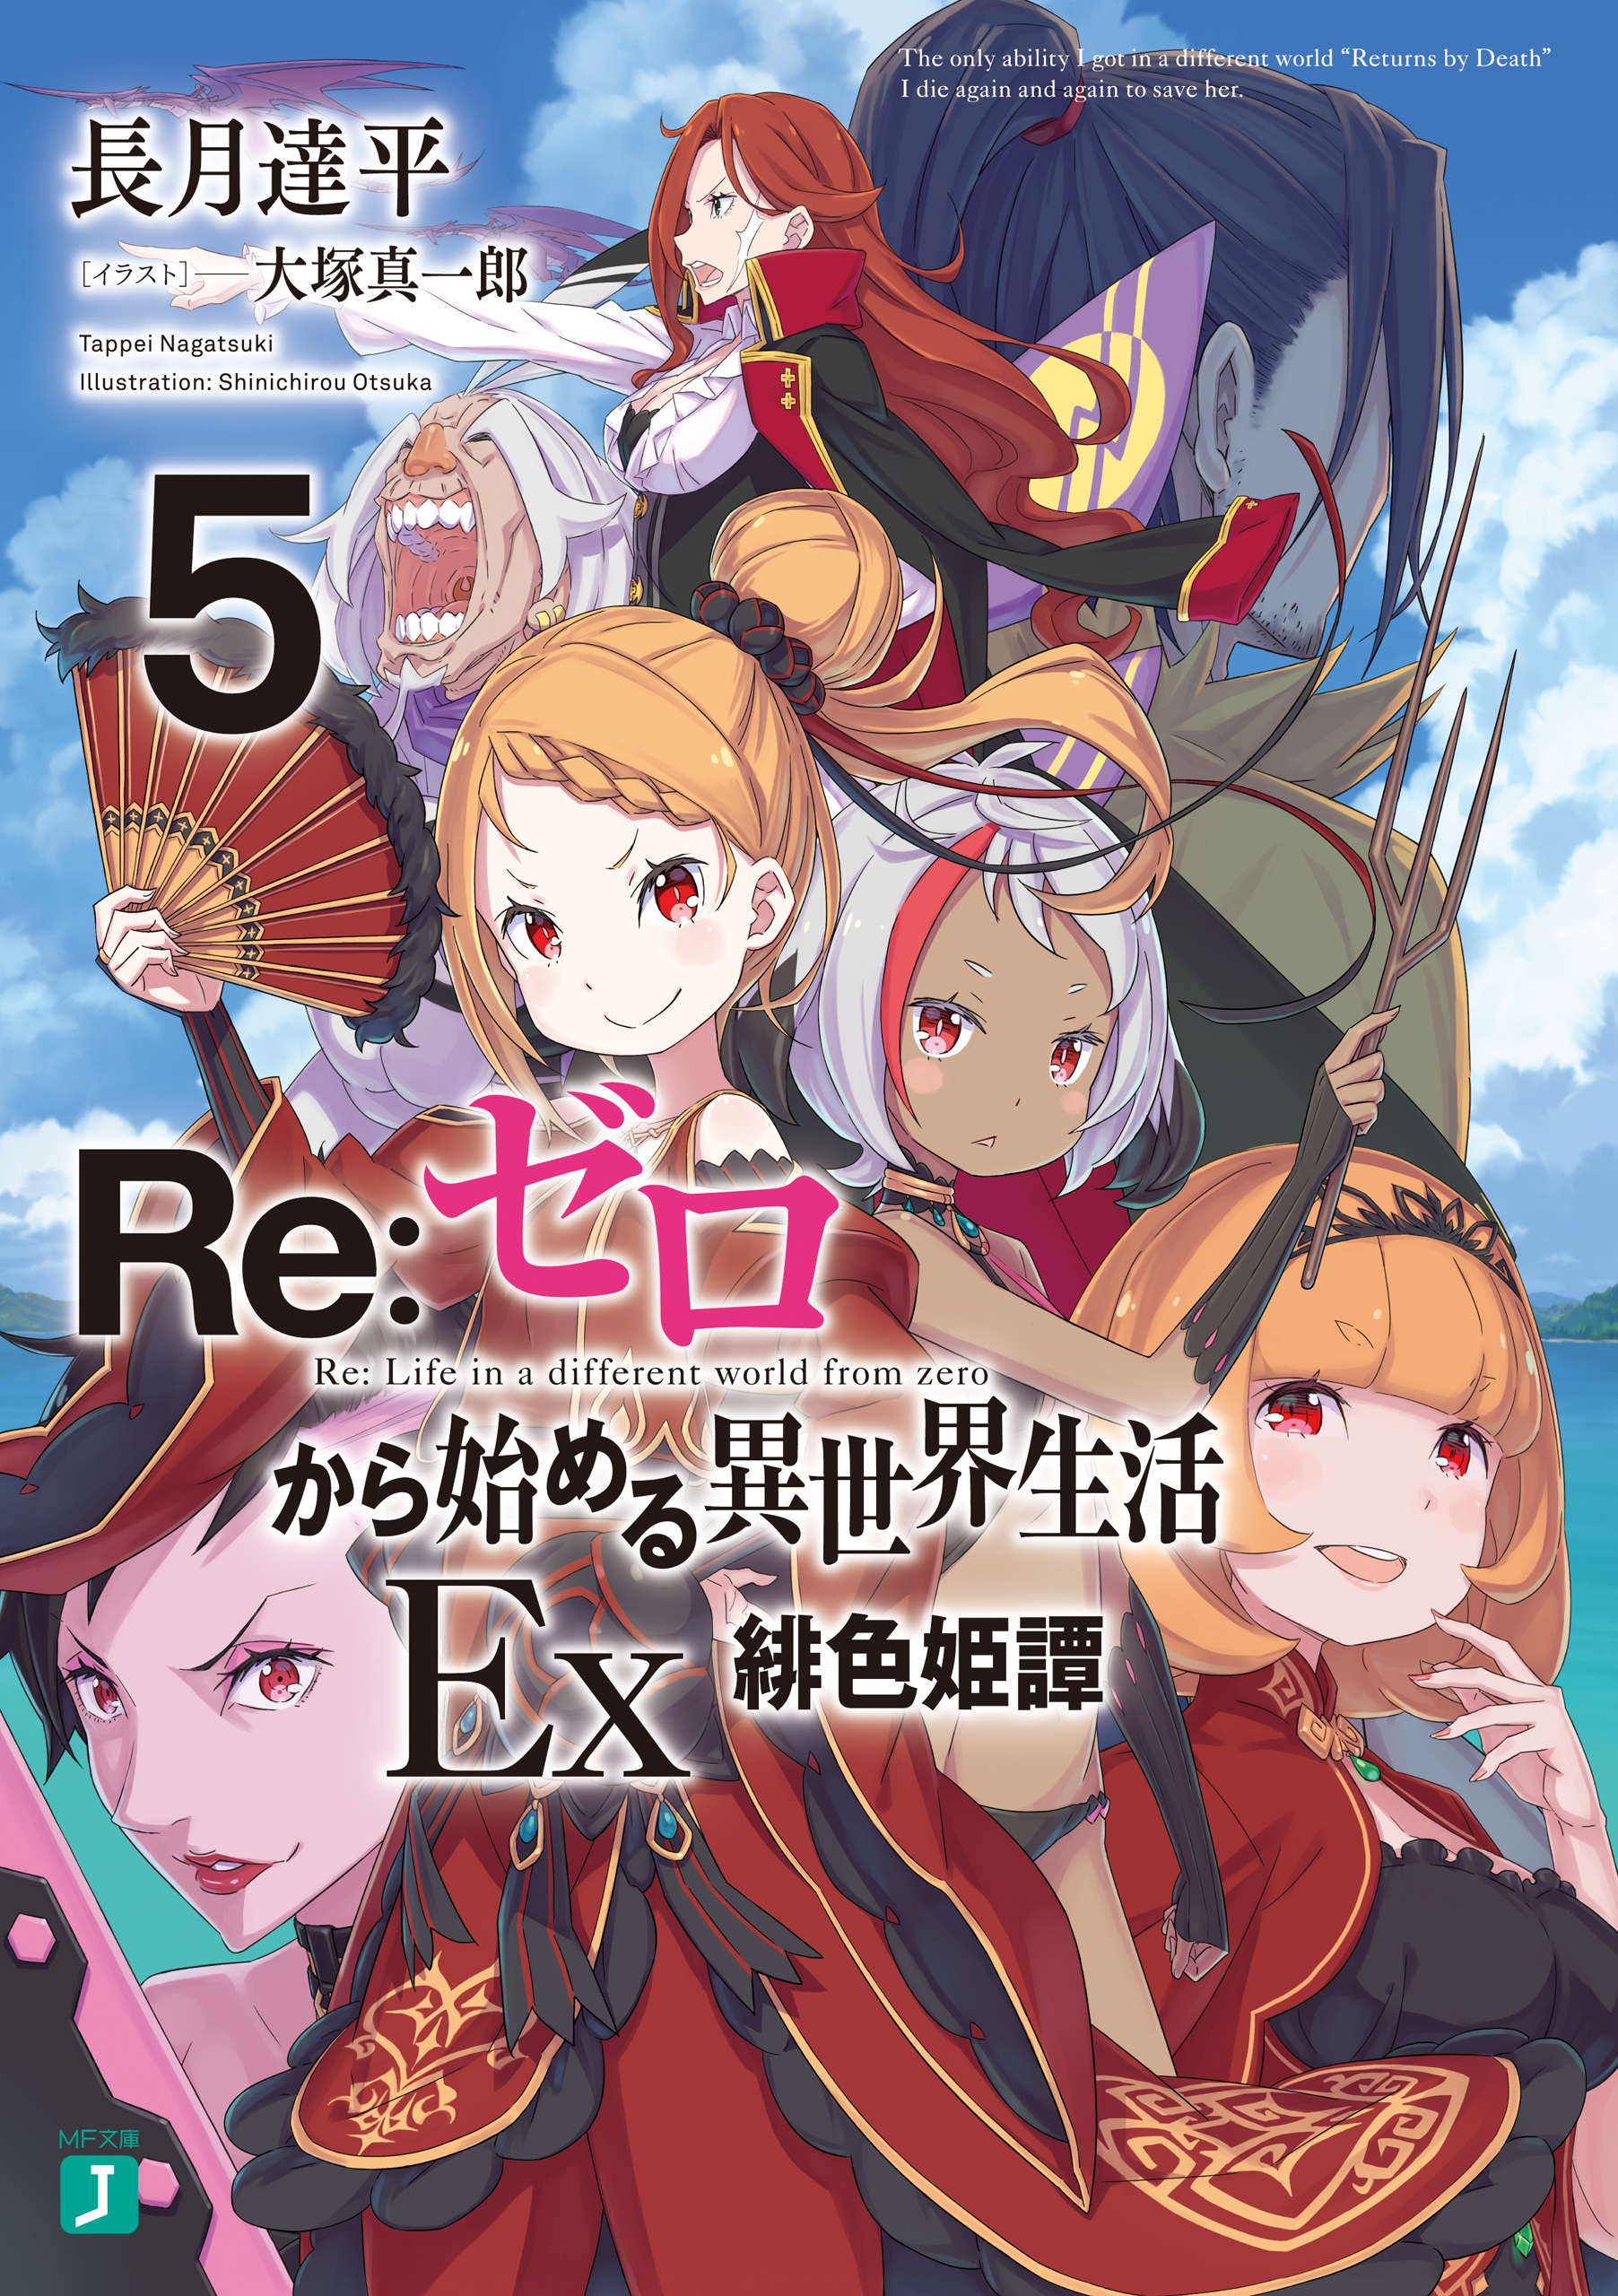 Re: Zero Anime Review – Gitopia – This Otaku Life of Mine